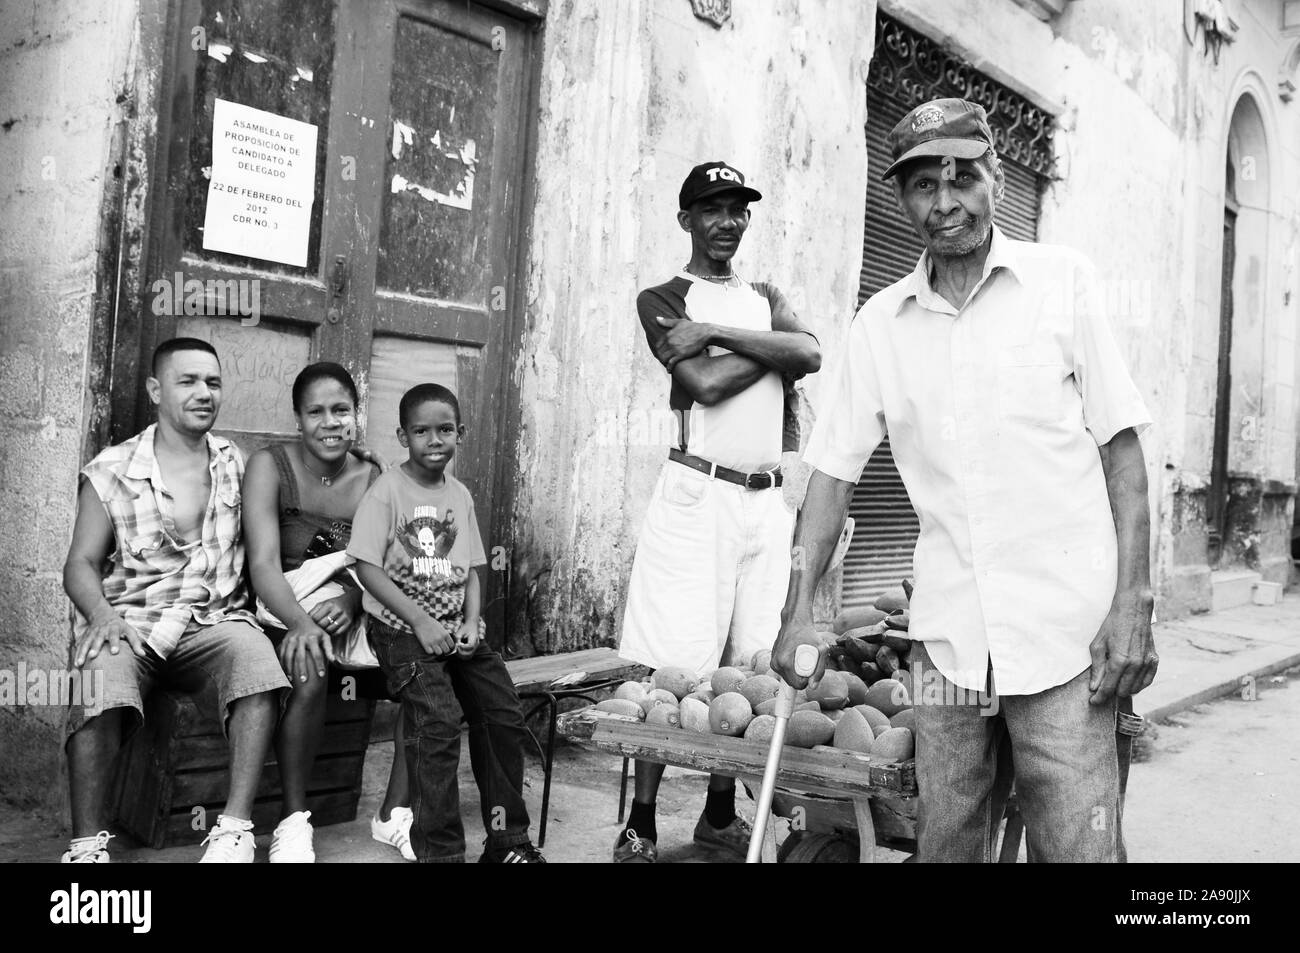 La Havane : peuple cubain assis sur la rue offrant des fruits, alors qu'un vieil homme marche Banque D'Images